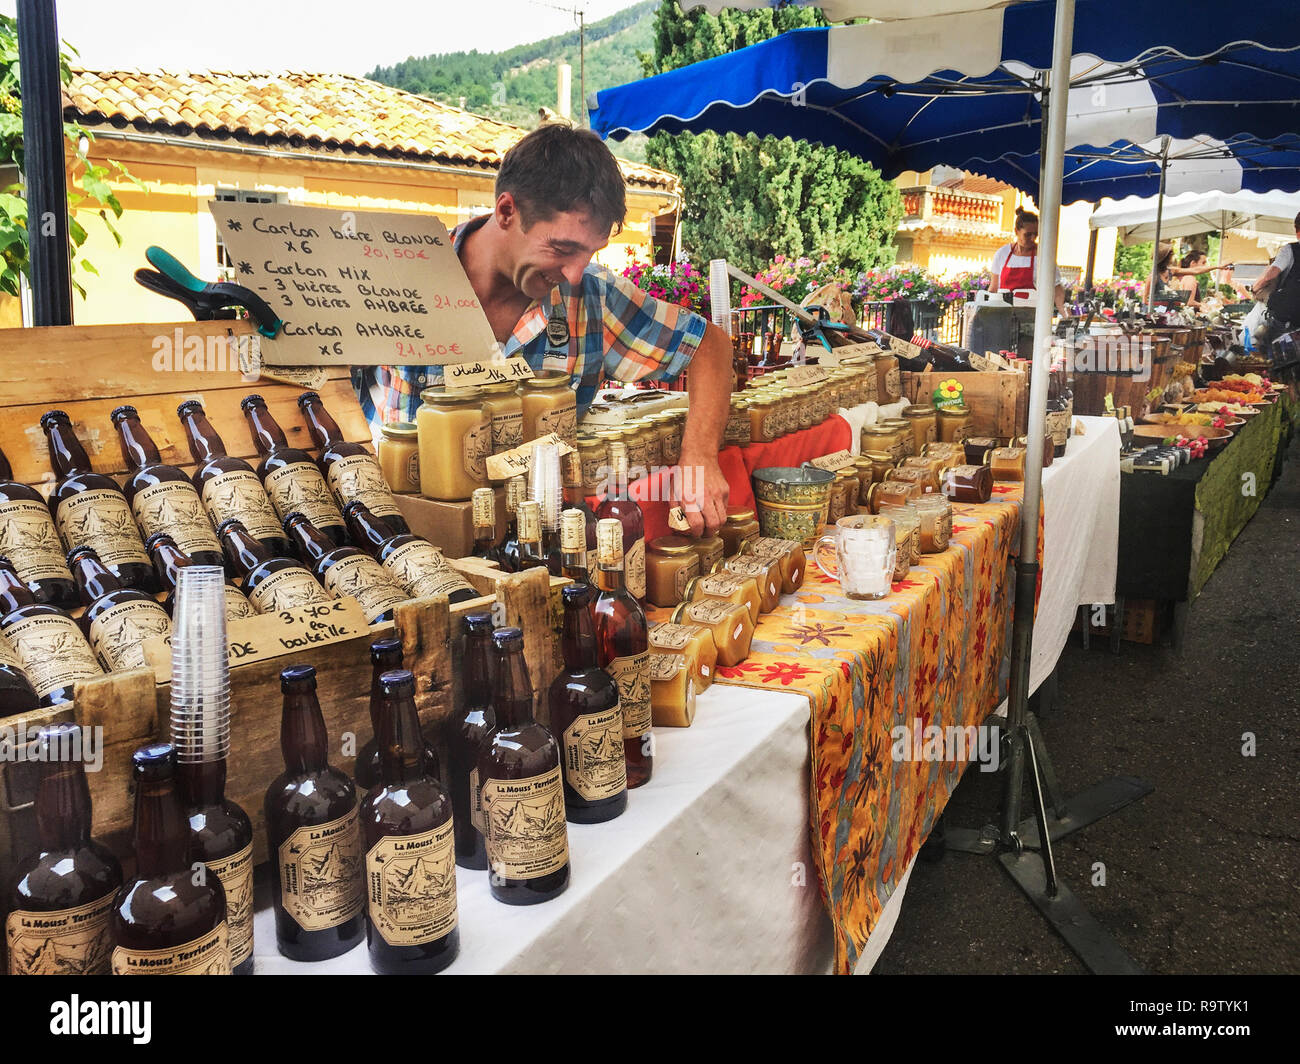 Las cervezas, los alimentos, los productos locales, expuestos para la venta en el mercado de fin de semana, de Moustiers-Sainte-Marie, Provence-Alpes-Côte d'Azur, Francia. Foto de stock